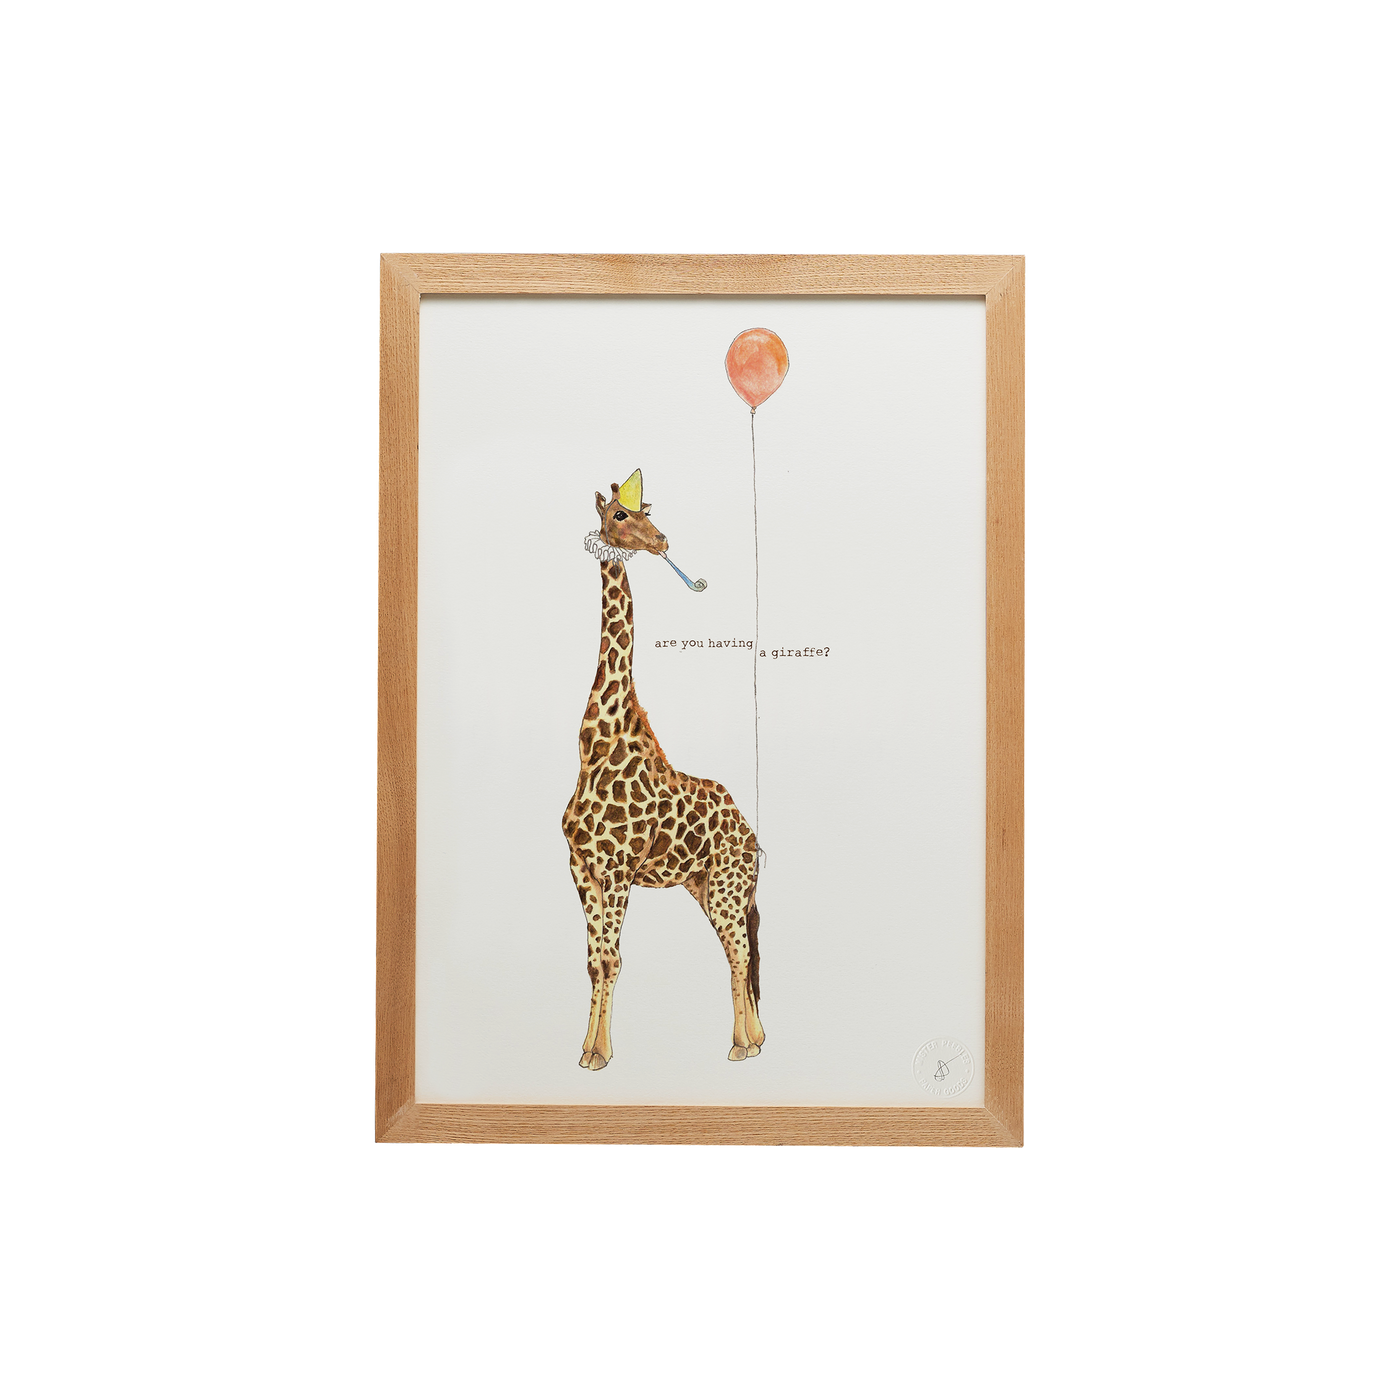 Having a Giraffe print cut out in a frame